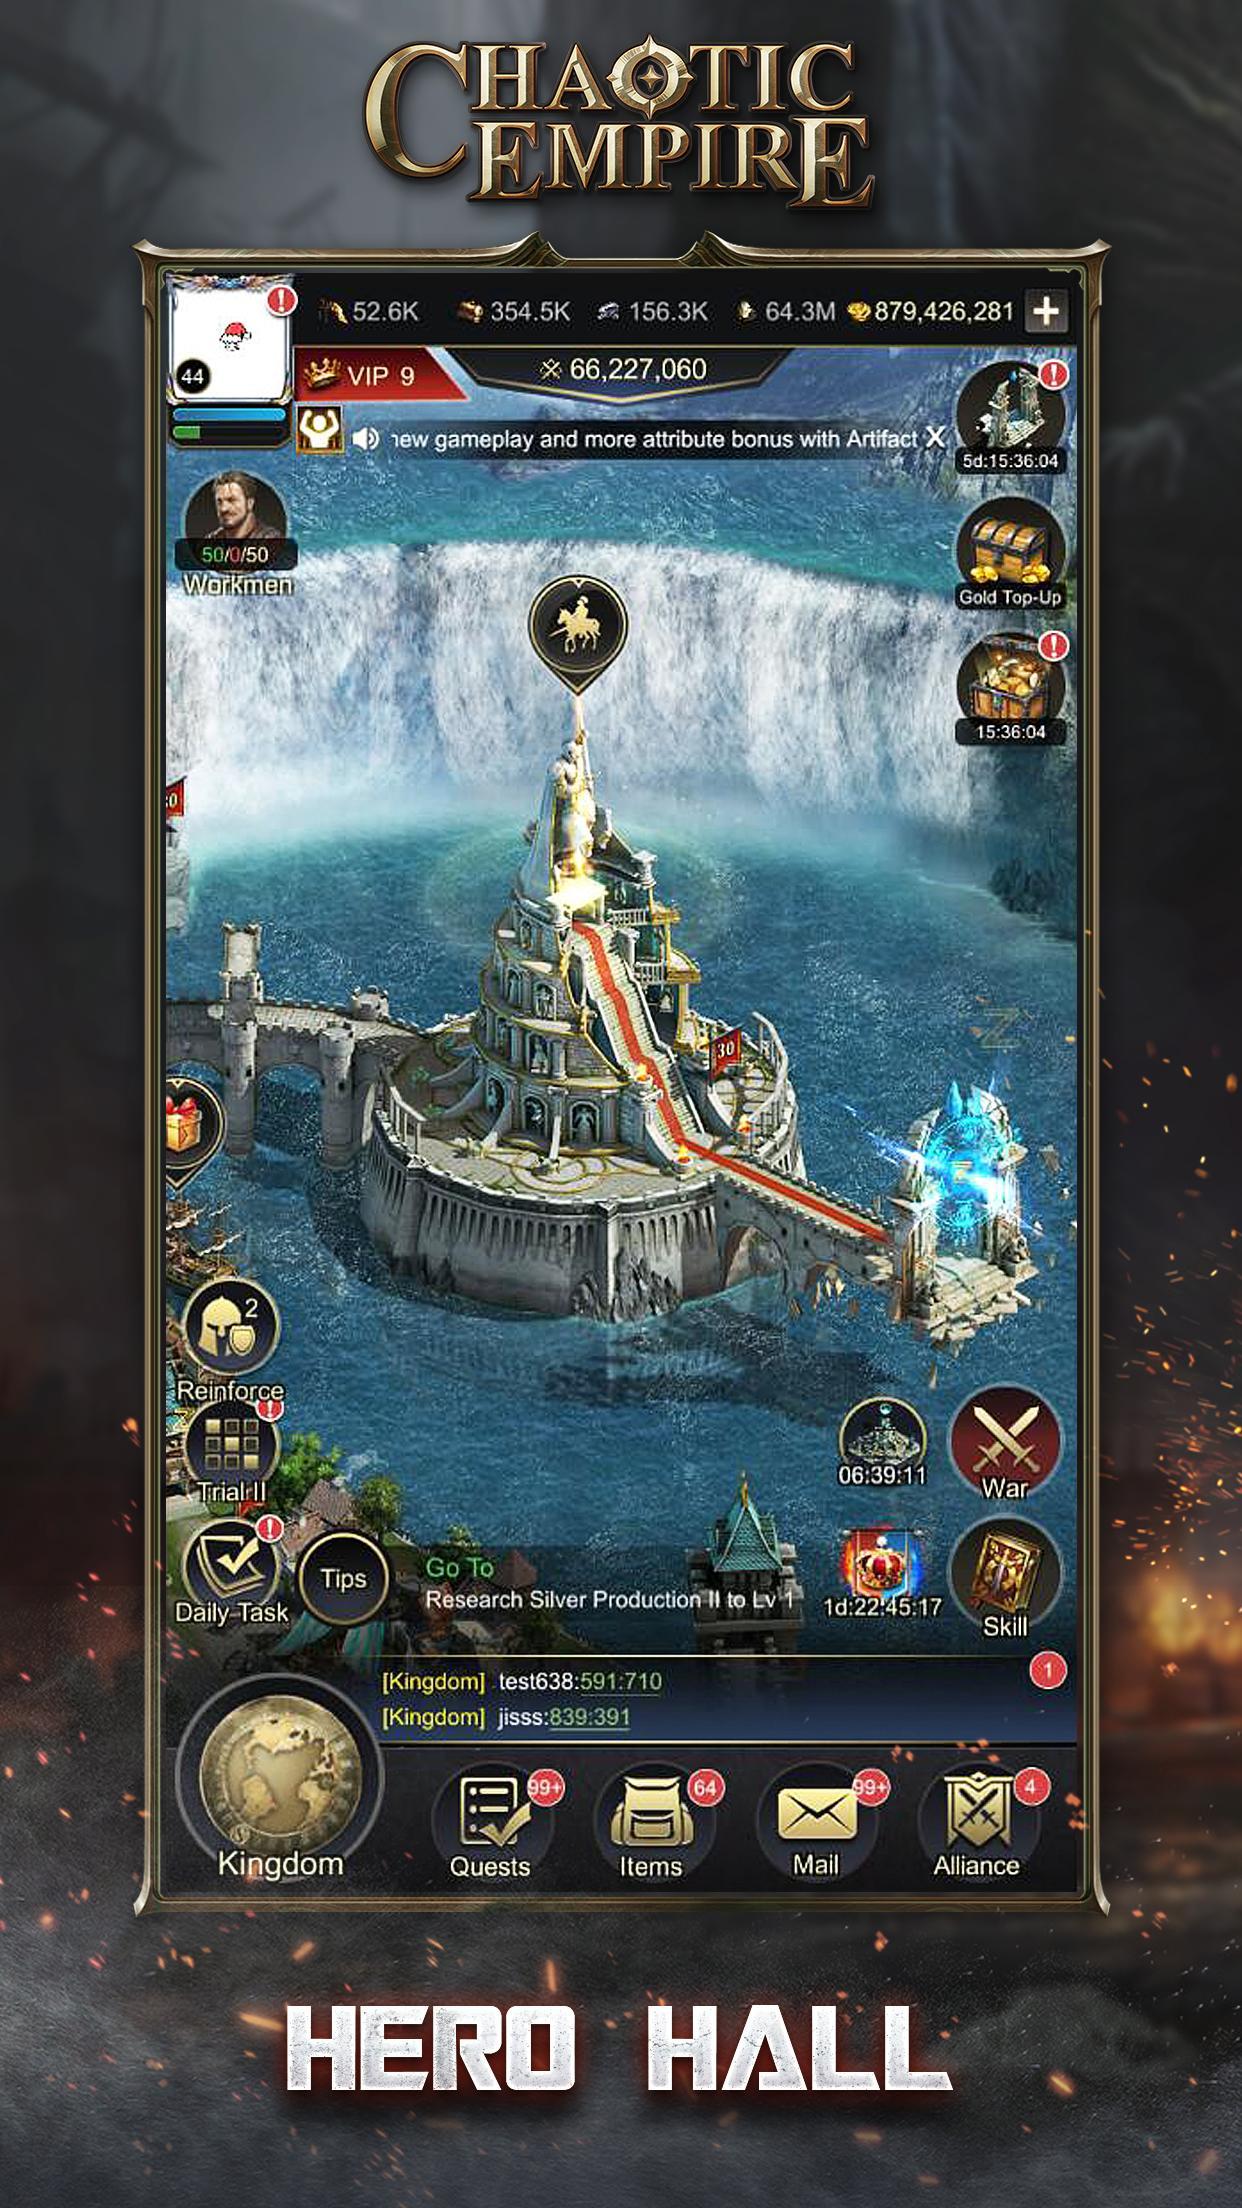 Screenshot 1 of Chaotic Empire: เกมกลยุทธ์ในตำนาน 1.0.4